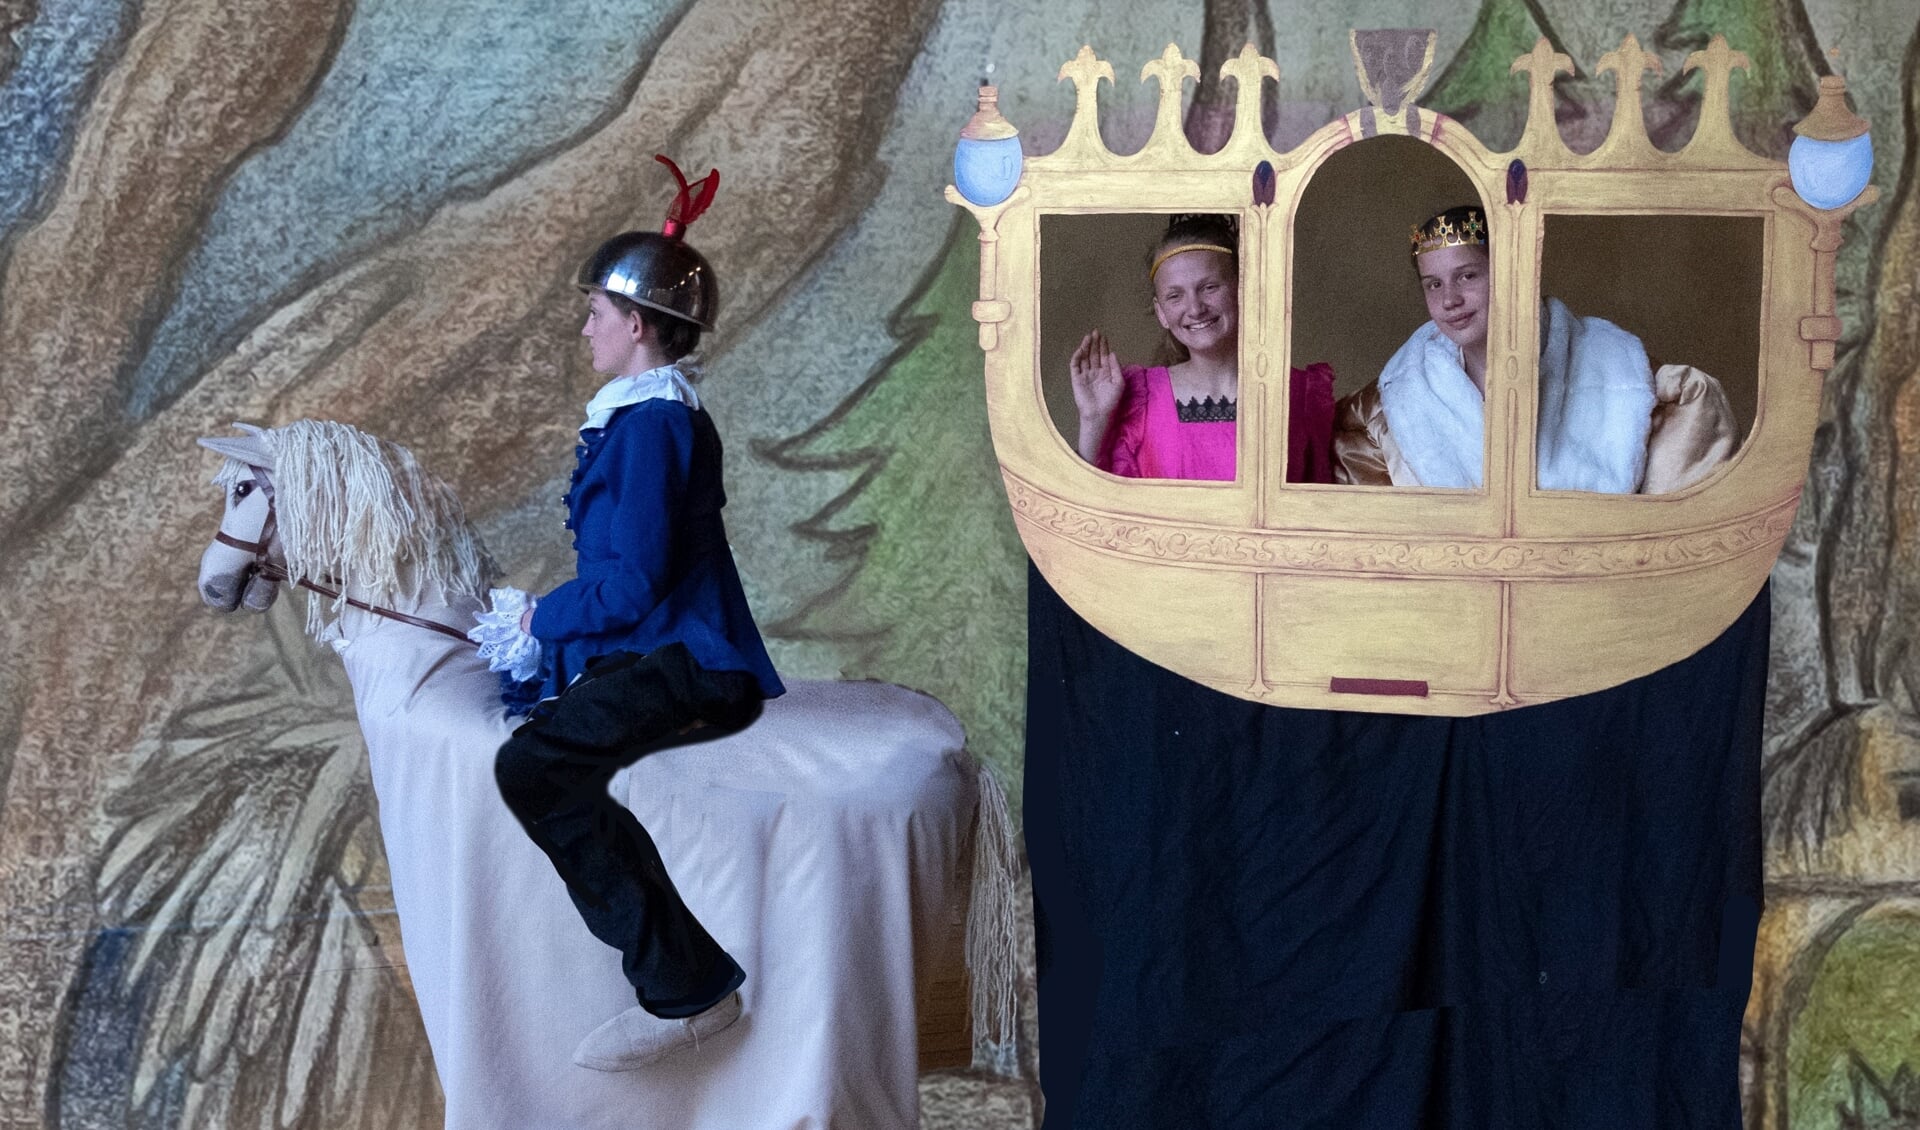 Tijdens de repetities van Zjuust, op het paard Lieve Wesselink, Koningin Bregje de Goede en Koning Dimitri de Borman. Foto: Rolf Zeldenthuis